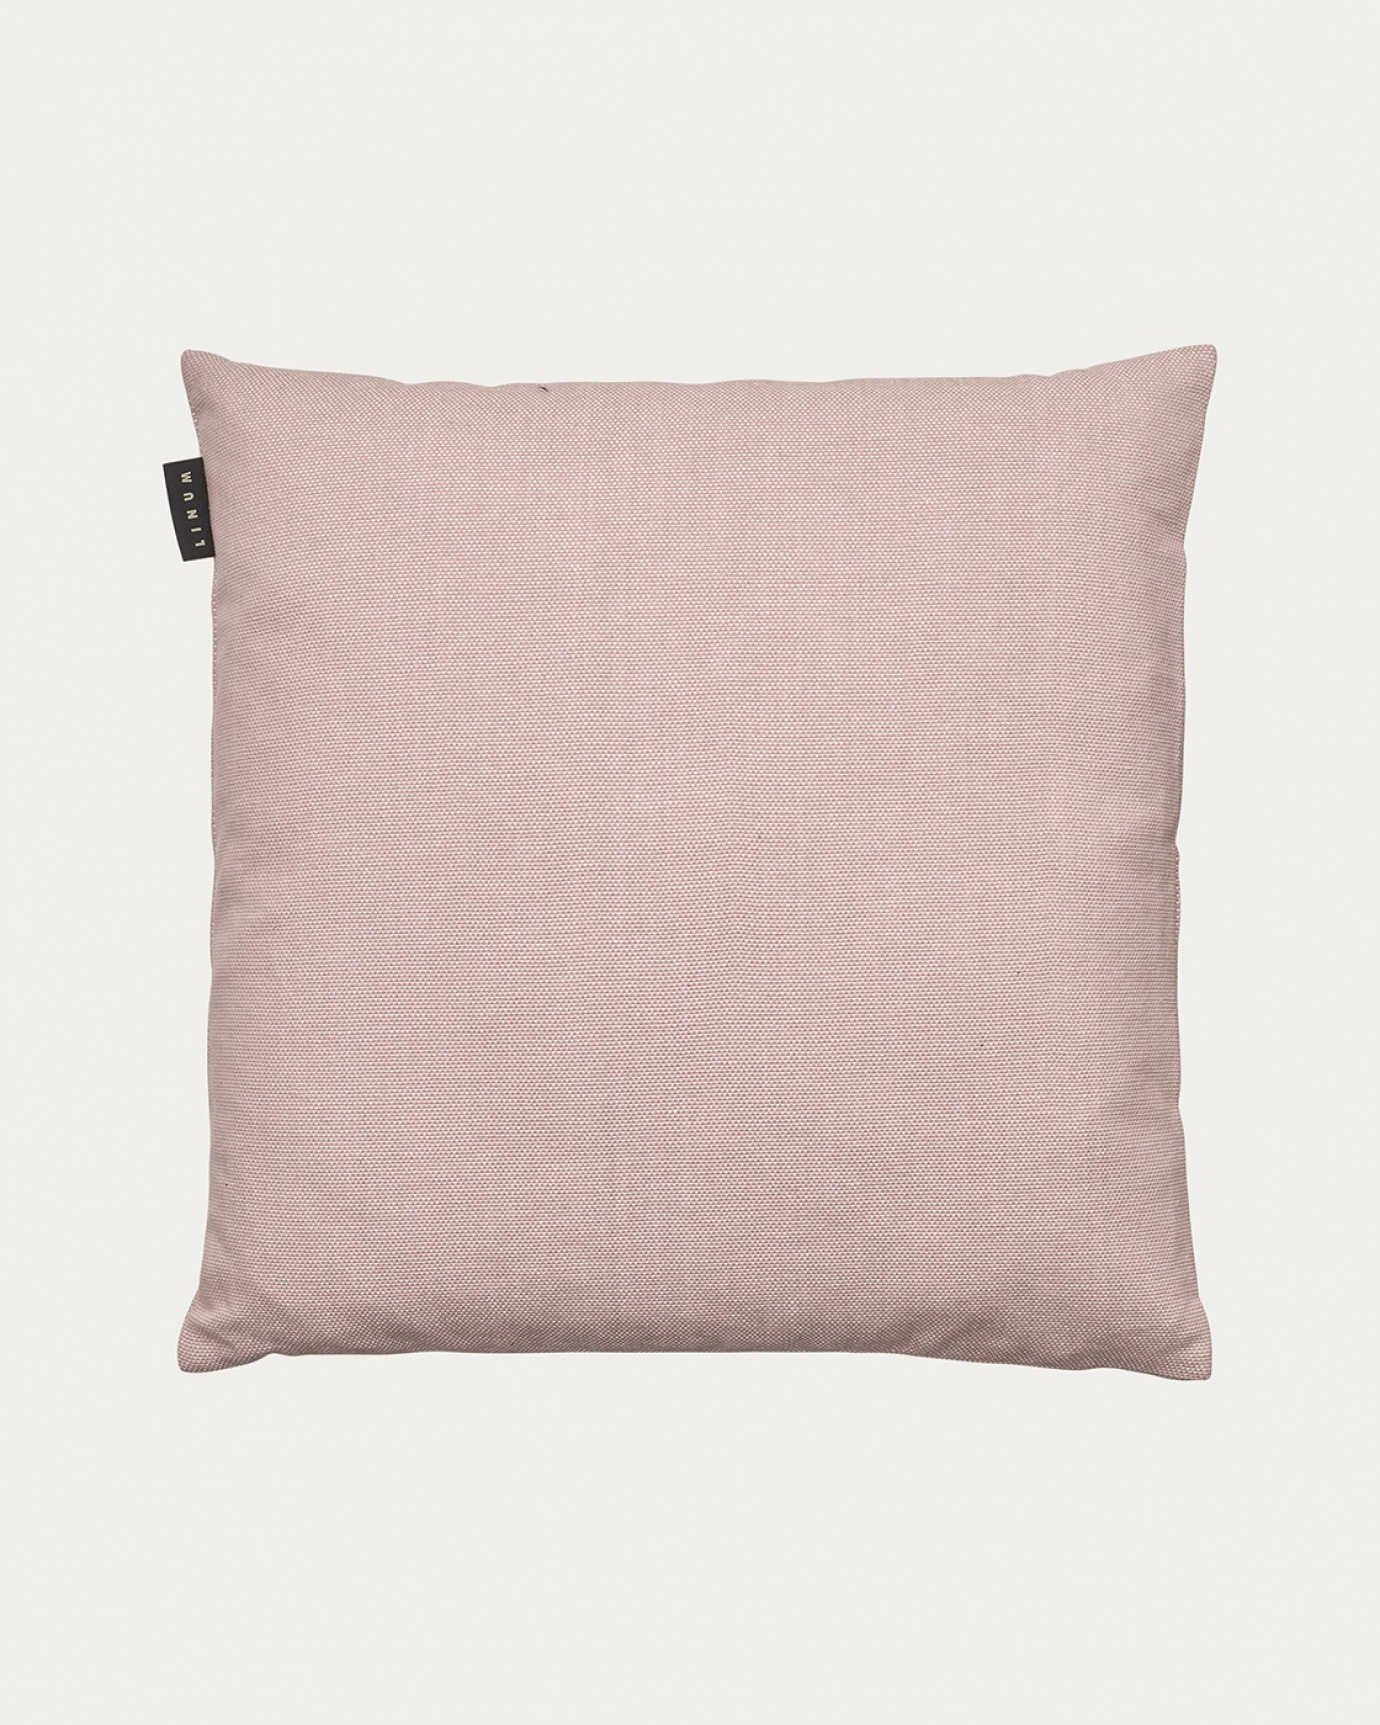 Image du produit housse de coussin PEPPER rose poudré en coton doux de LINUM DESIGN. Facile à laver et durable pendant des générations. Taille 50 x 50 cm.